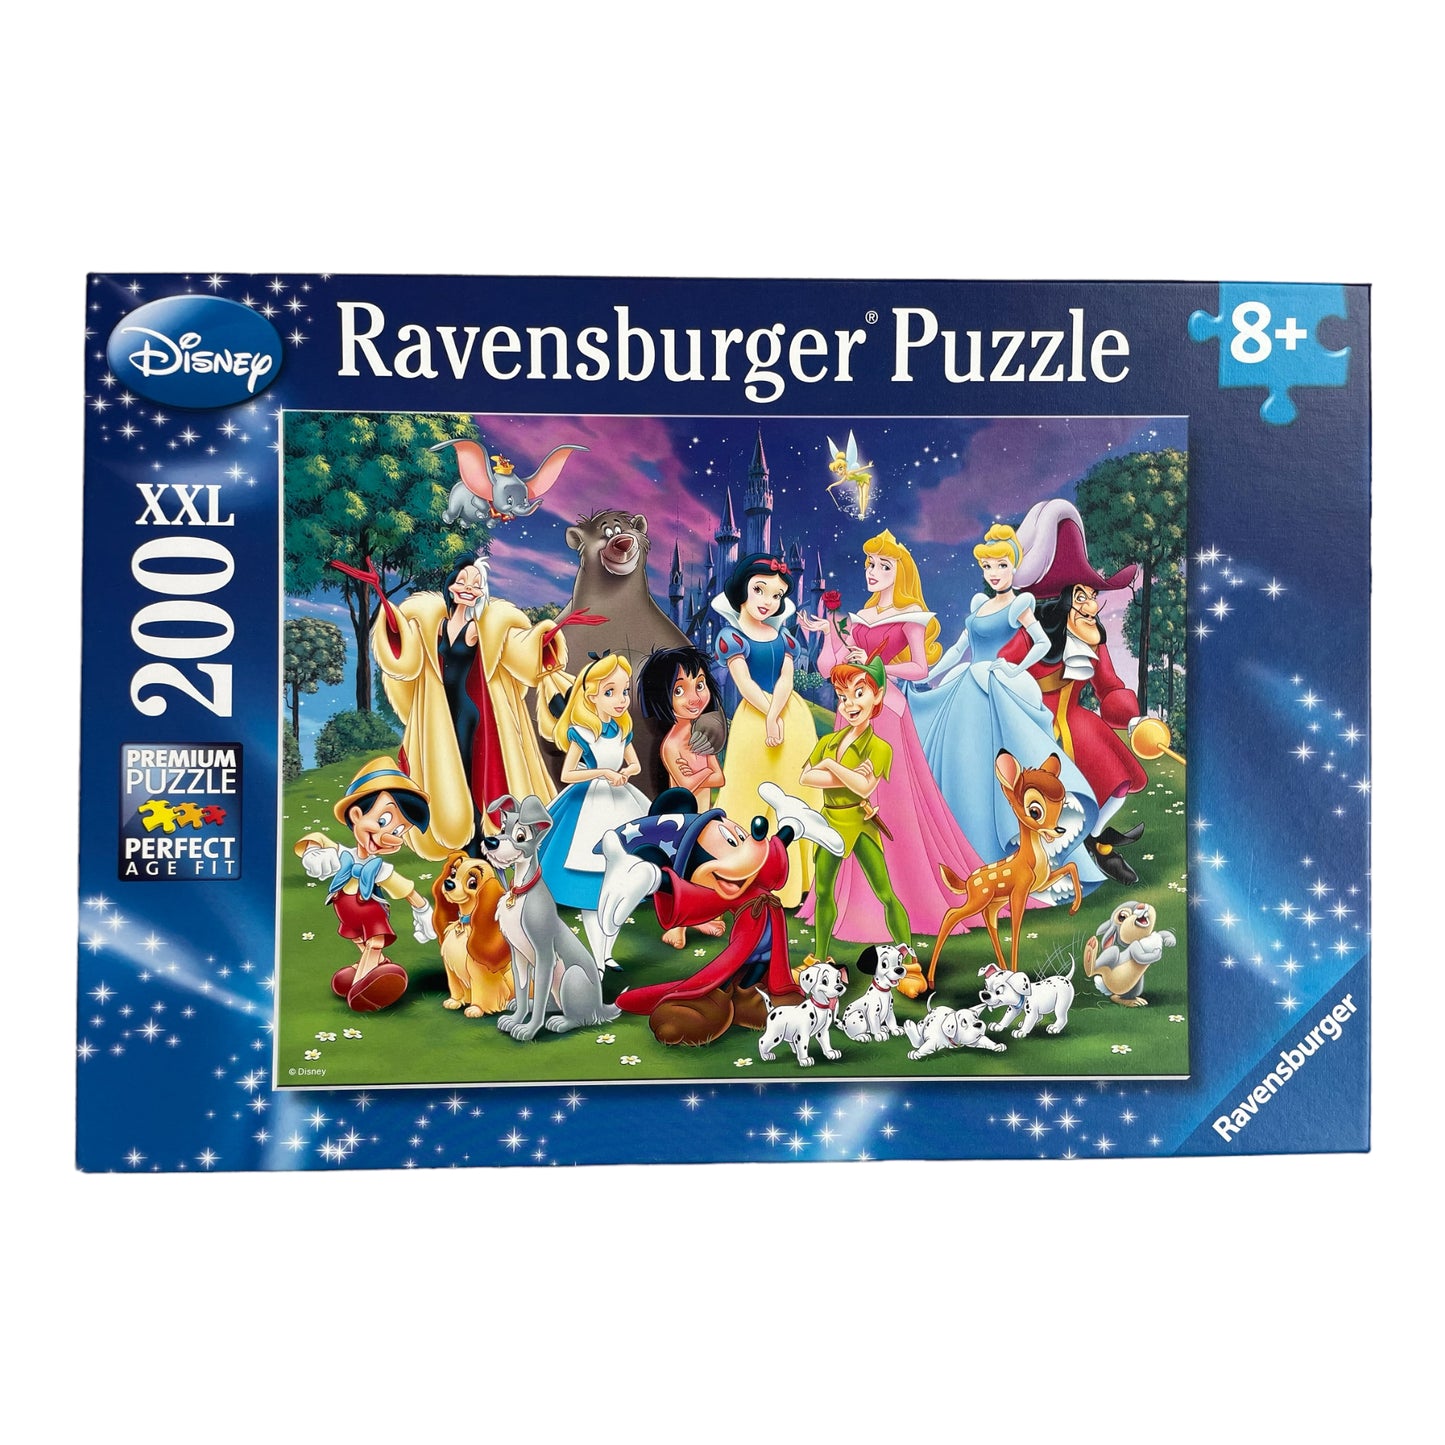 Ravensburger - Disney Favorites - Puzzle 200 pieces XXL